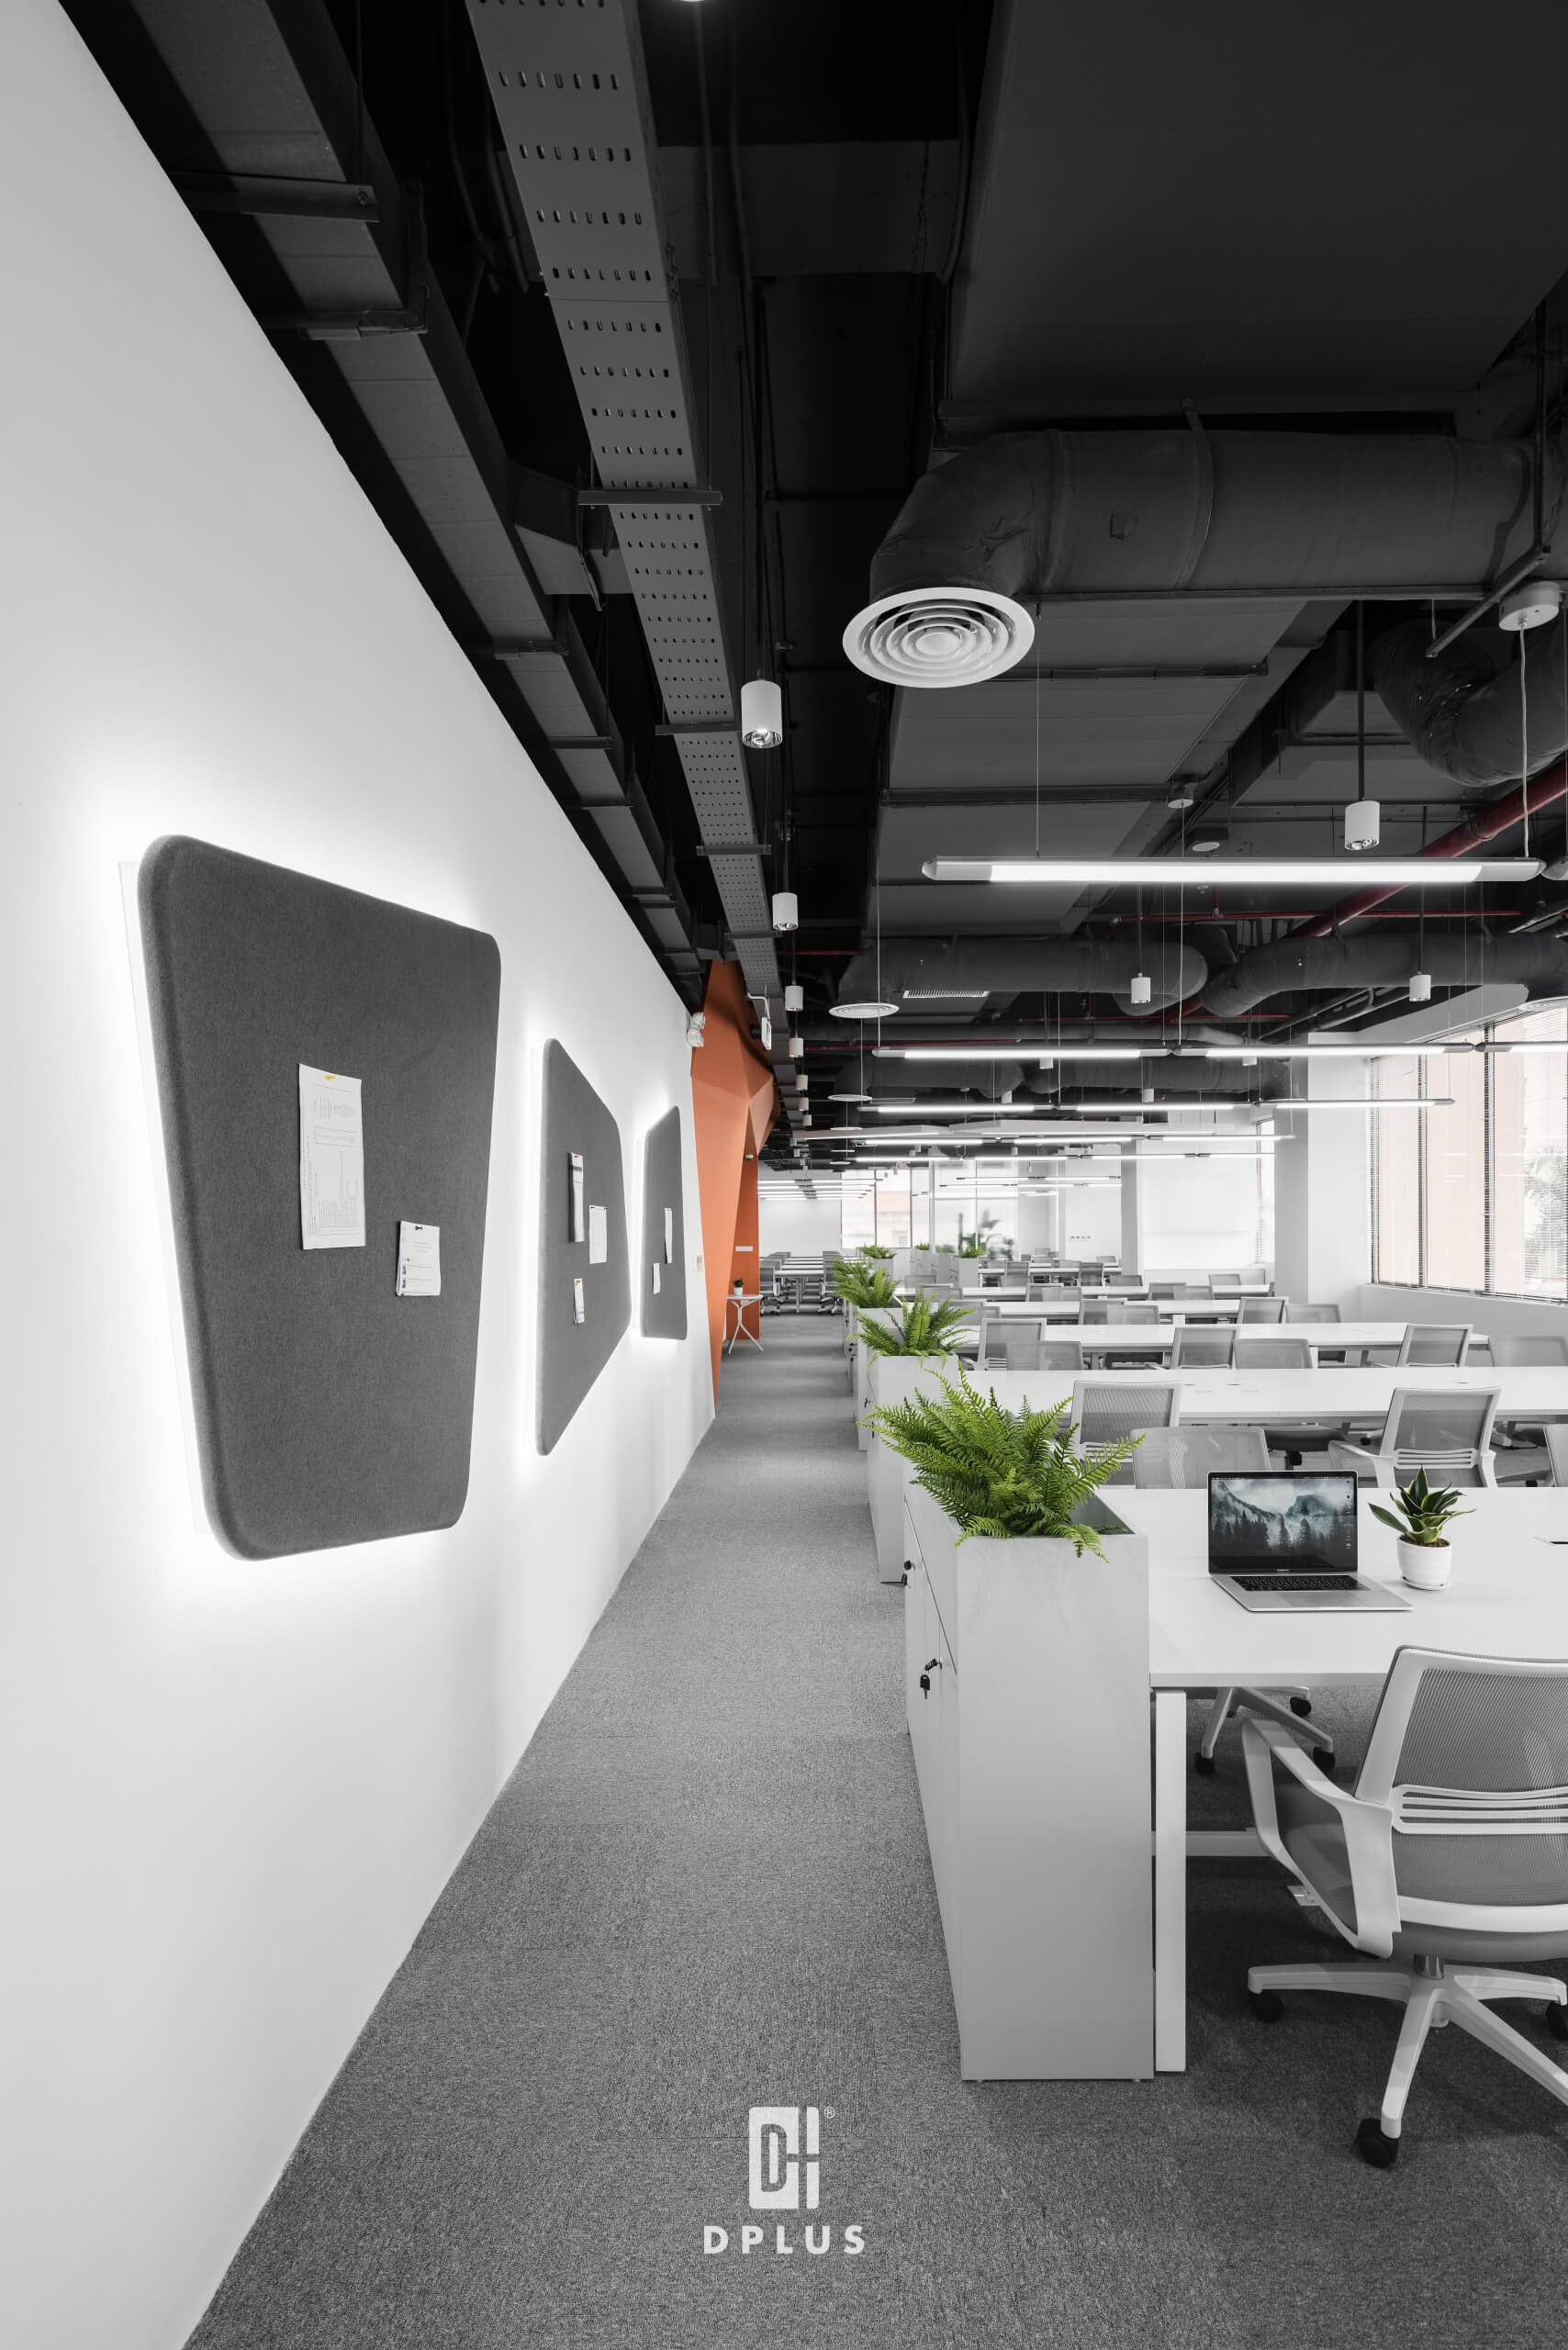 thiết kế cao ốc văn phòng đạt tiêu chuẩn về công năng sử dụng cho nội thất